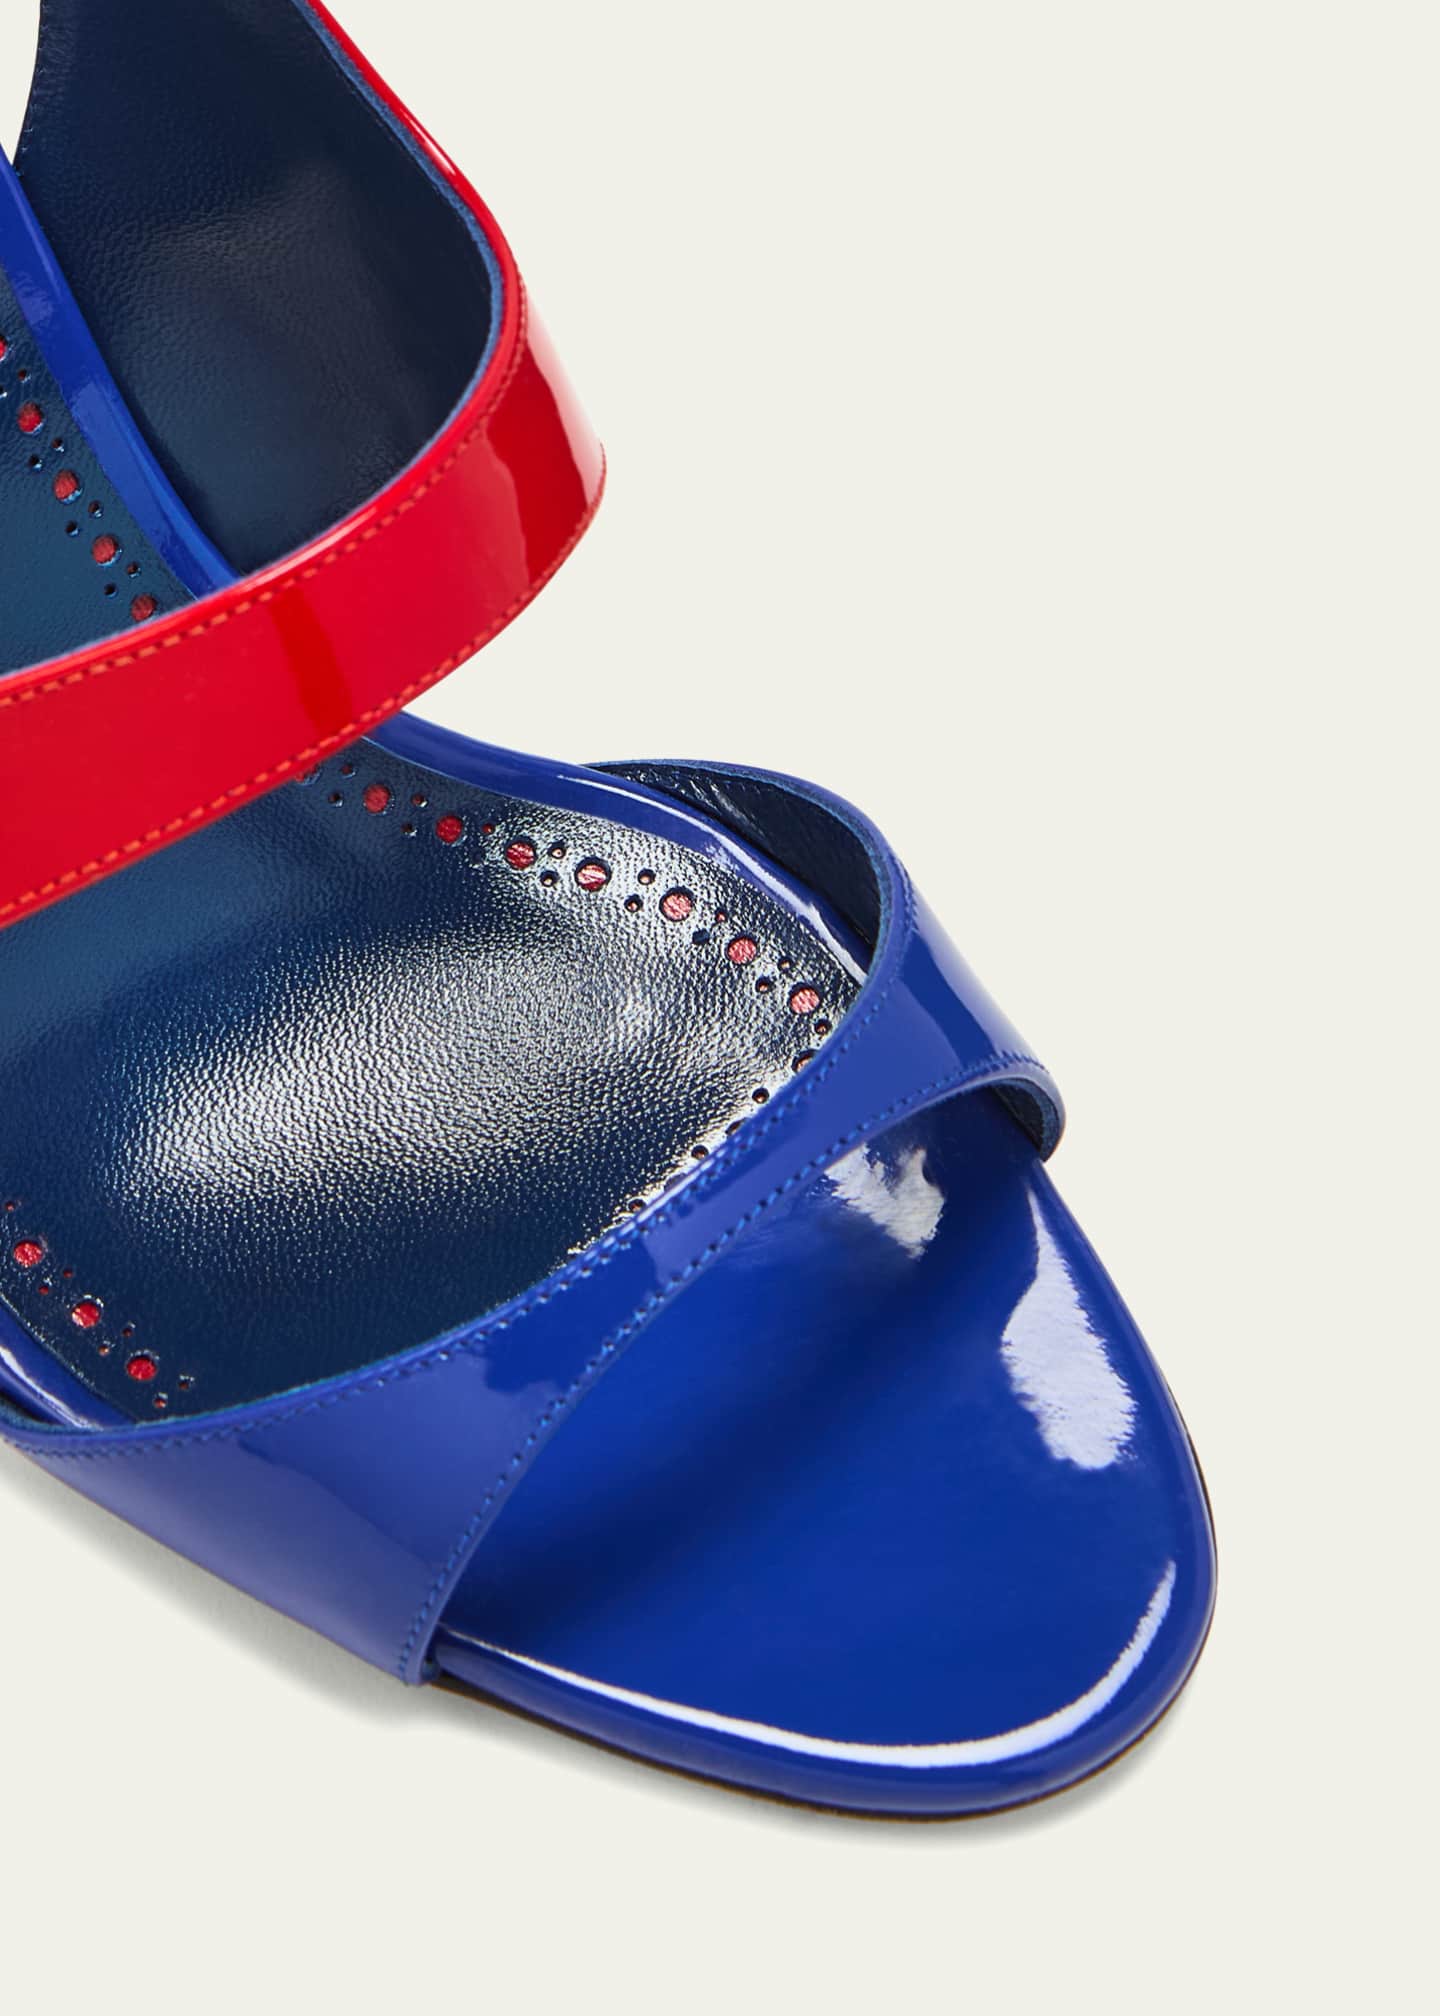 Manolo Blahnik Climnetra Bicolor Patent Slingback Sandals